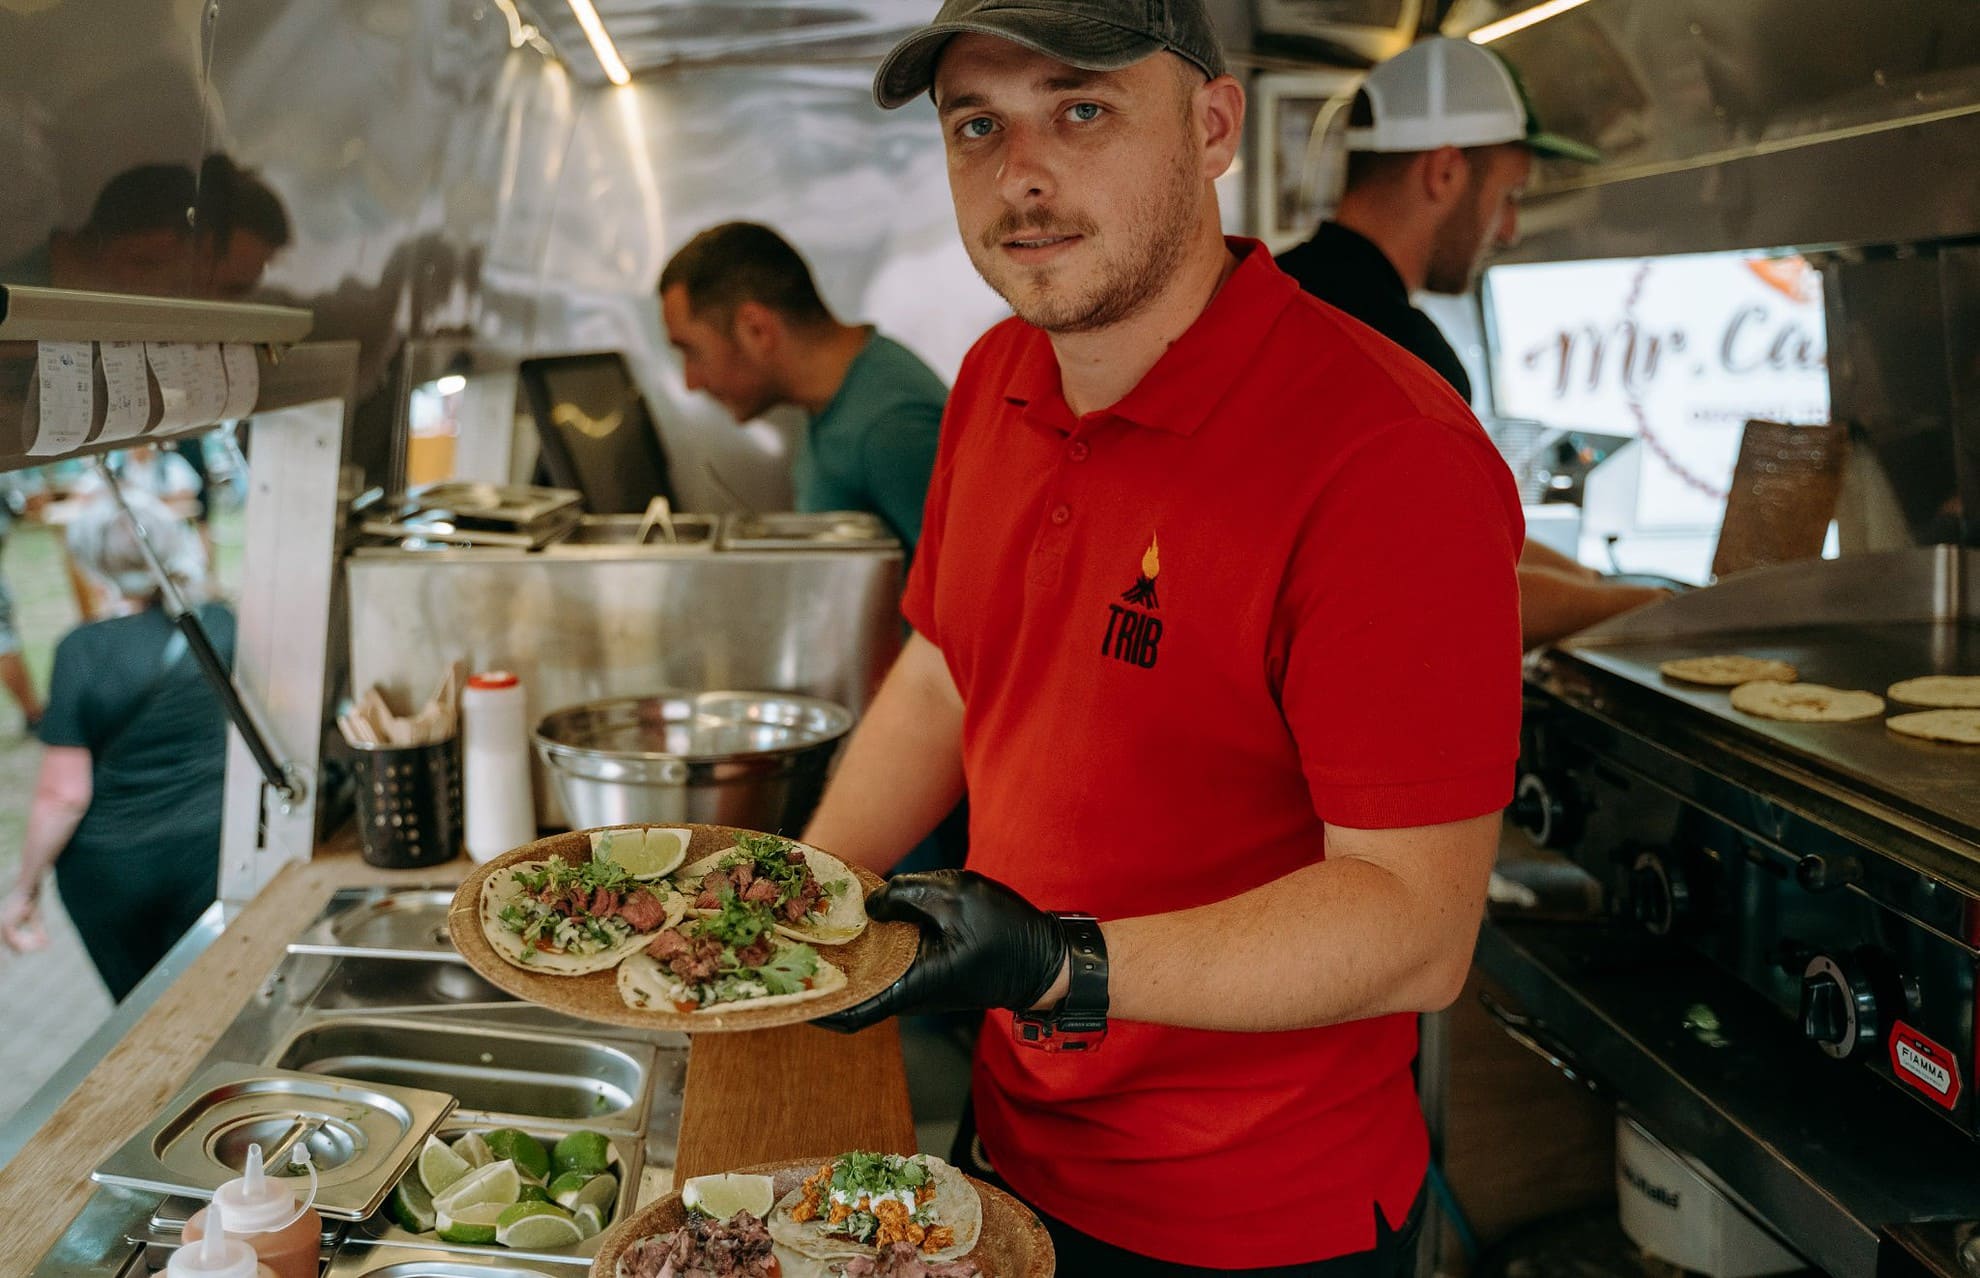 vino la cel mai cool street food din sibiu - muzica bună și zeci de food truck-uri ”invadează” parcul tineretului timp de patru zile